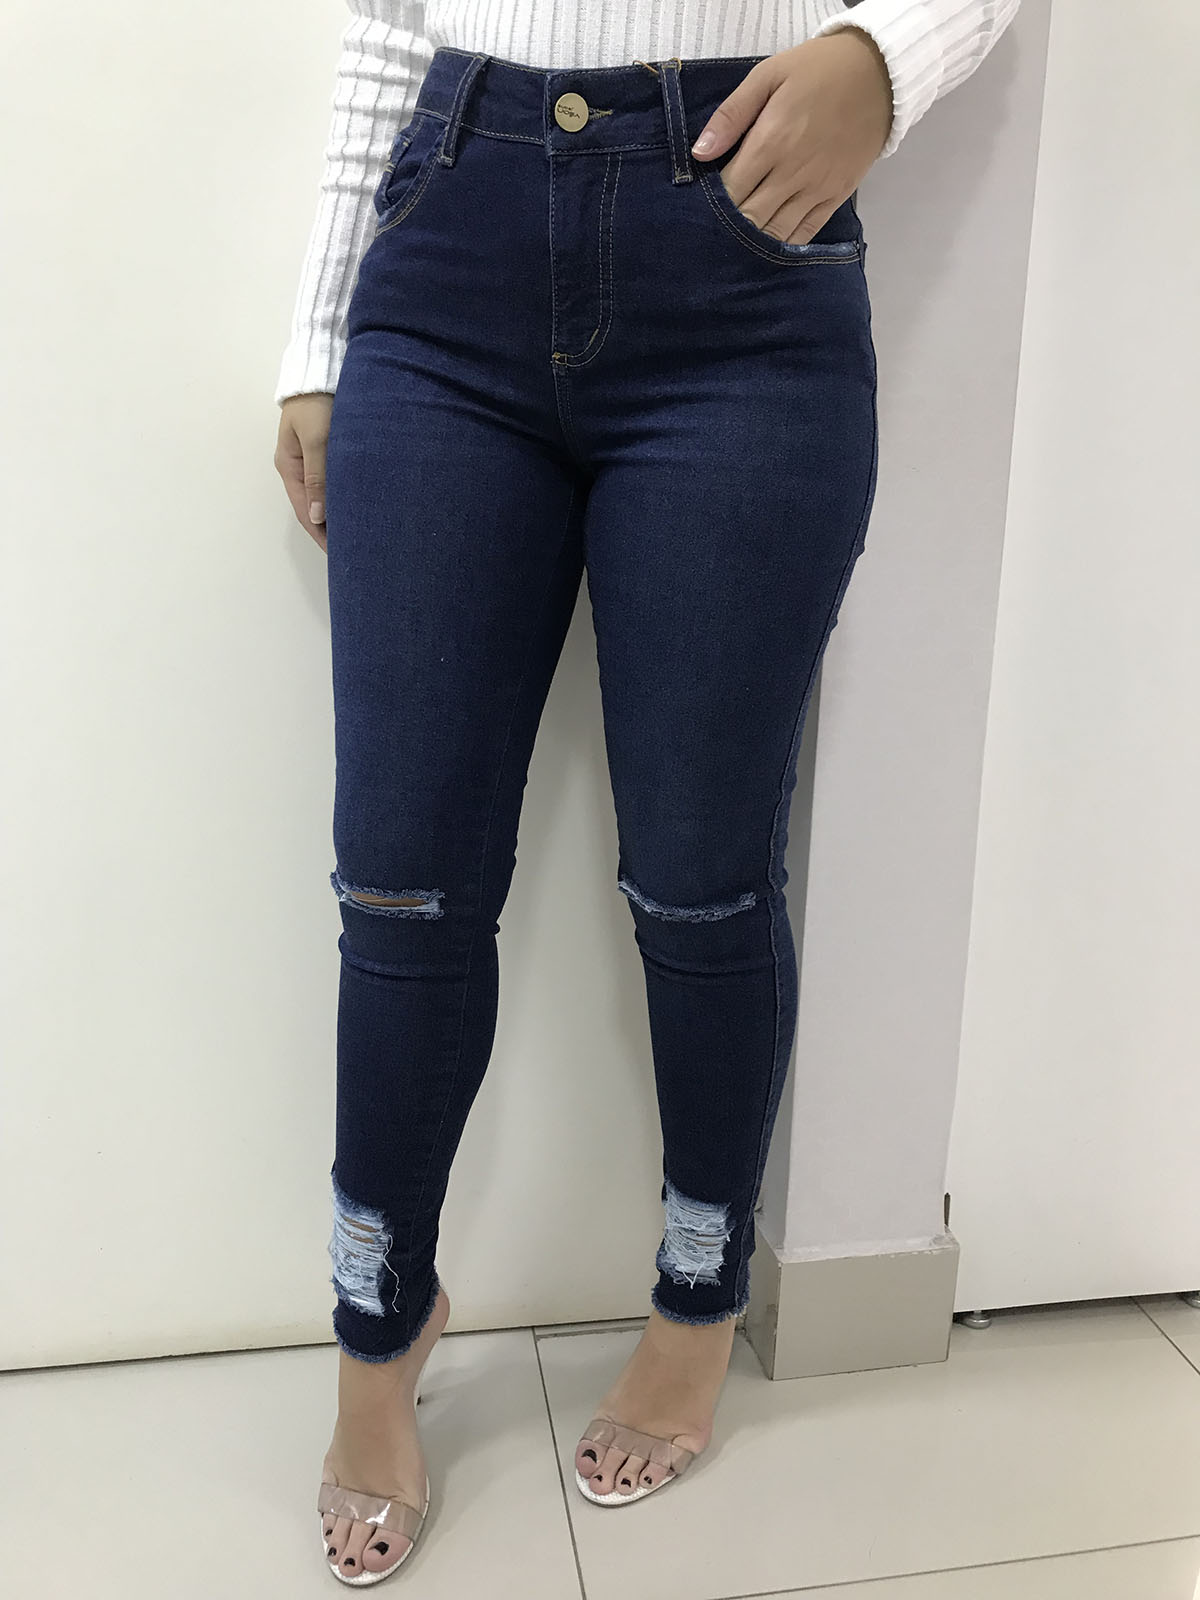 jeans clarifay